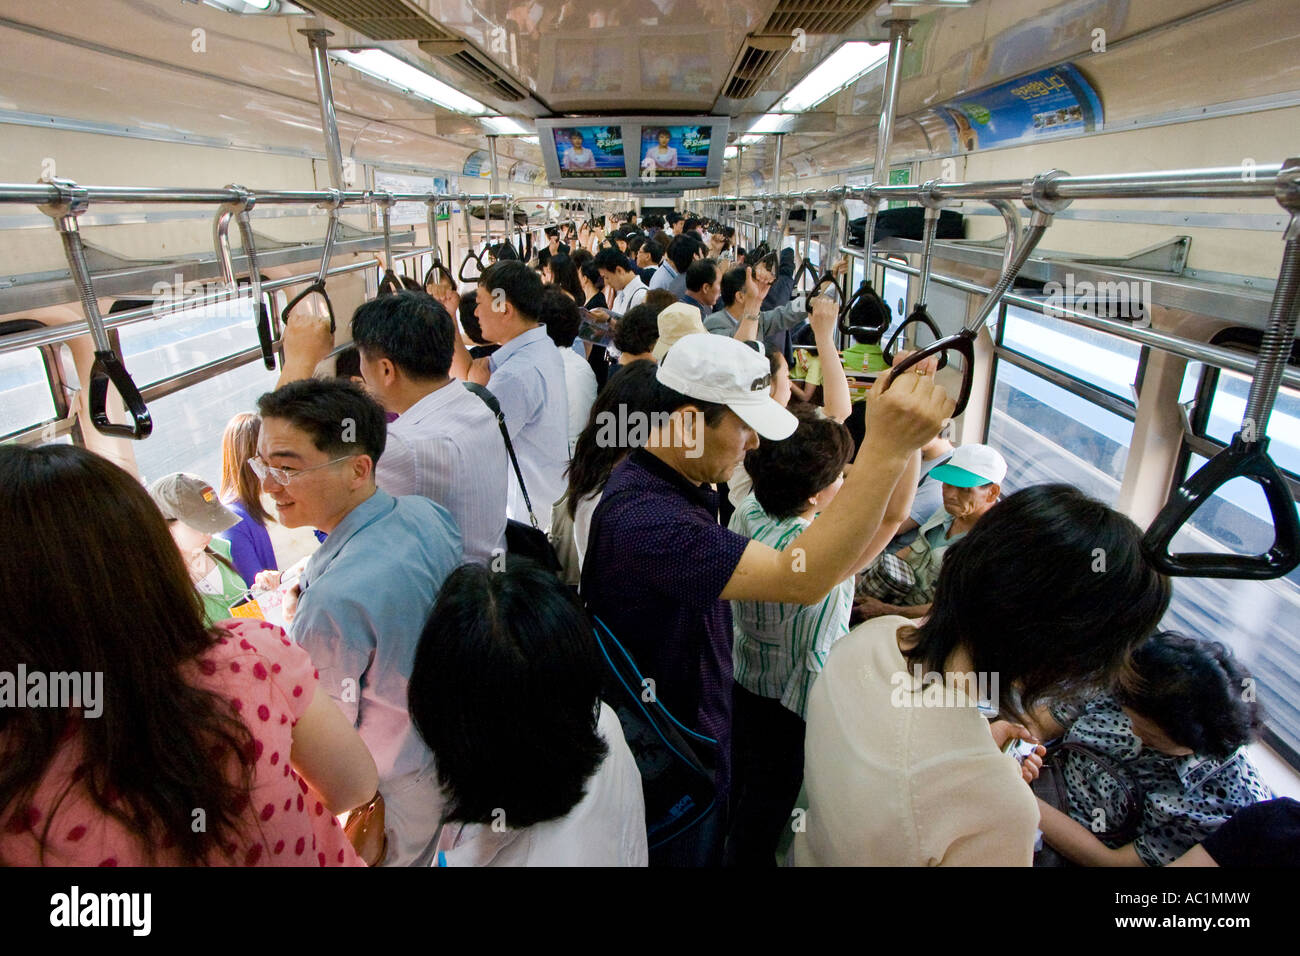 Popolo coreano su Metro treno della metropolitana Seoul COREA DEL SUD Foto Stock